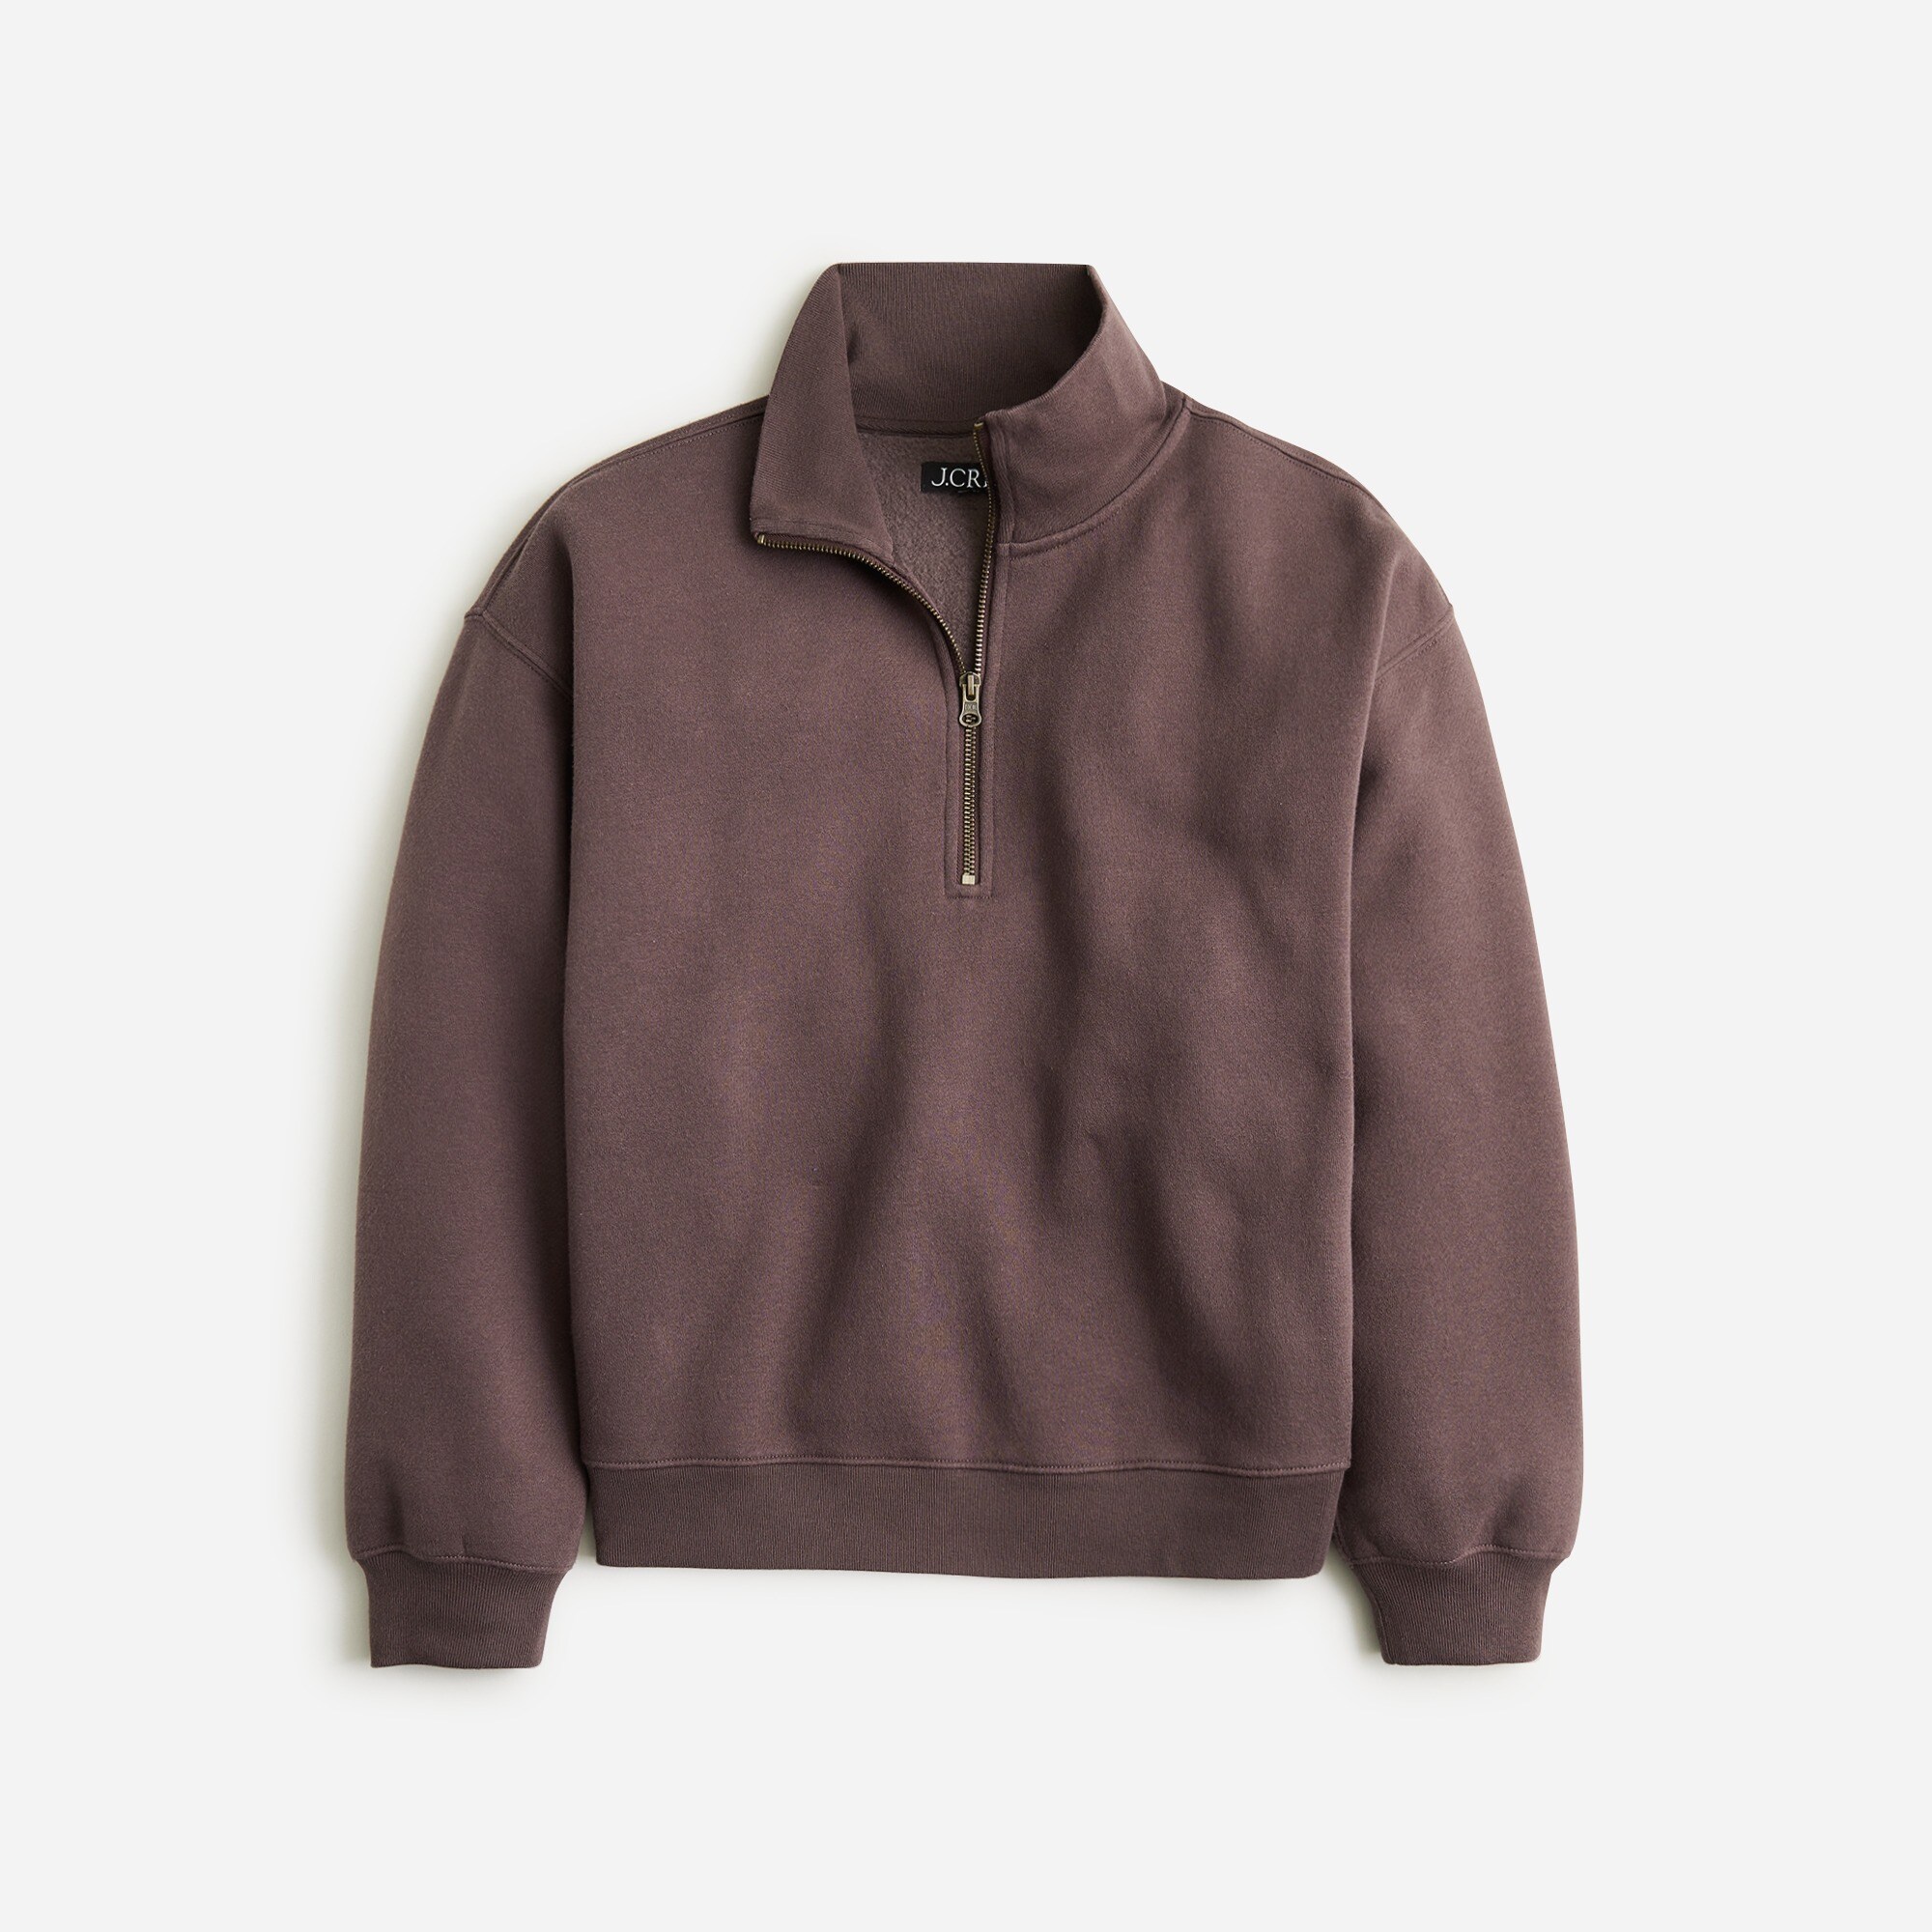  Heritage fleece half-zip sweatshirt